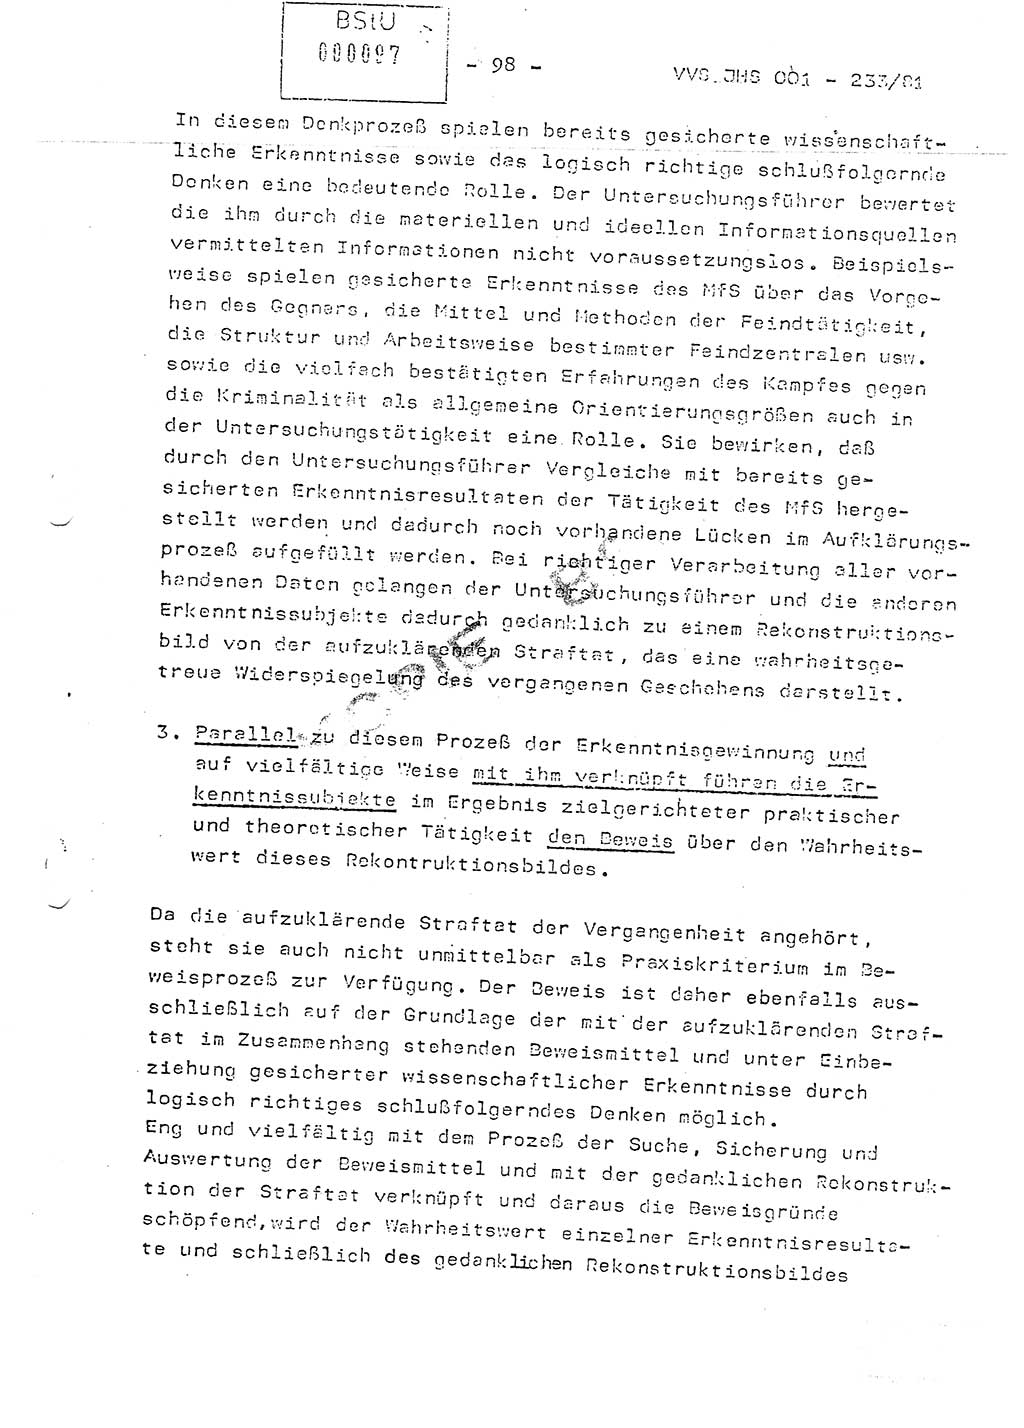 Dissertation Oberstleutnant Horst Zank (JHS), Oberstleutnant Dr. Karl-Heinz Knoblauch (JHS), Oberstleutnant Gustav-Adolf Kowalewski (HA Ⅸ), Oberstleutnant Wolfgang Plötner (HA Ⅸ), Ministerium für Staatssicherheit (MfS) [Deutsche Demokratische Republik (DDR)], Juristische Hochschule (JHS), Vertrauliche Verschlußsache (VVS) o001-233/81, Potsdam 1981, Blatt 98 (Diss. MfS DDR JHS VVS o001-233/81 1981, Bl. 98)